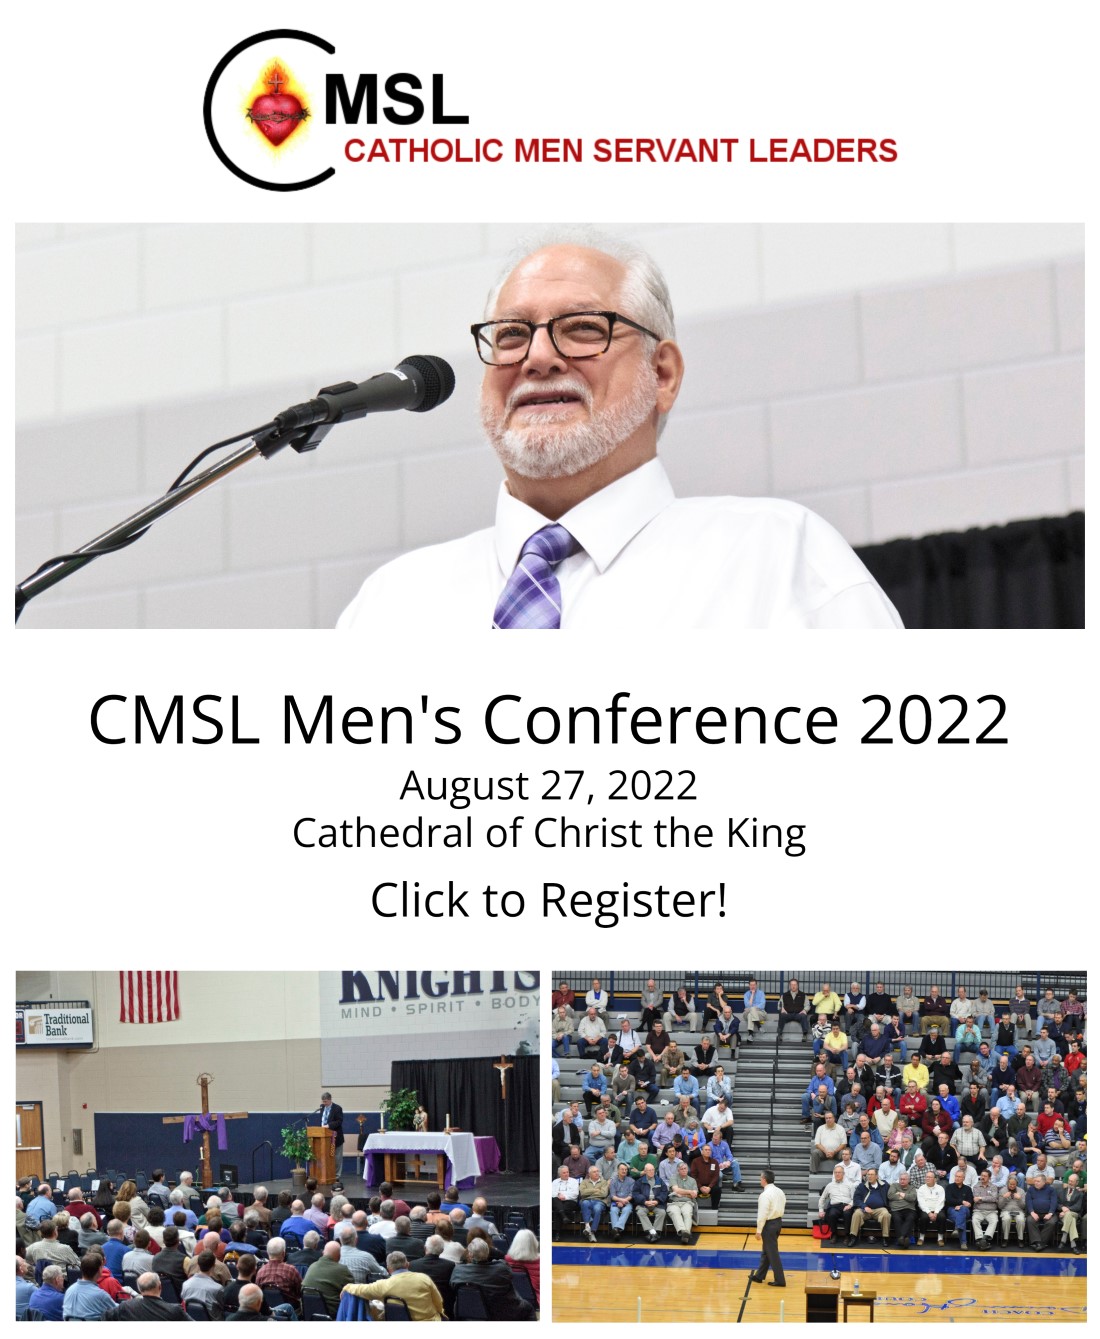 CMSL Men's Conference 2022